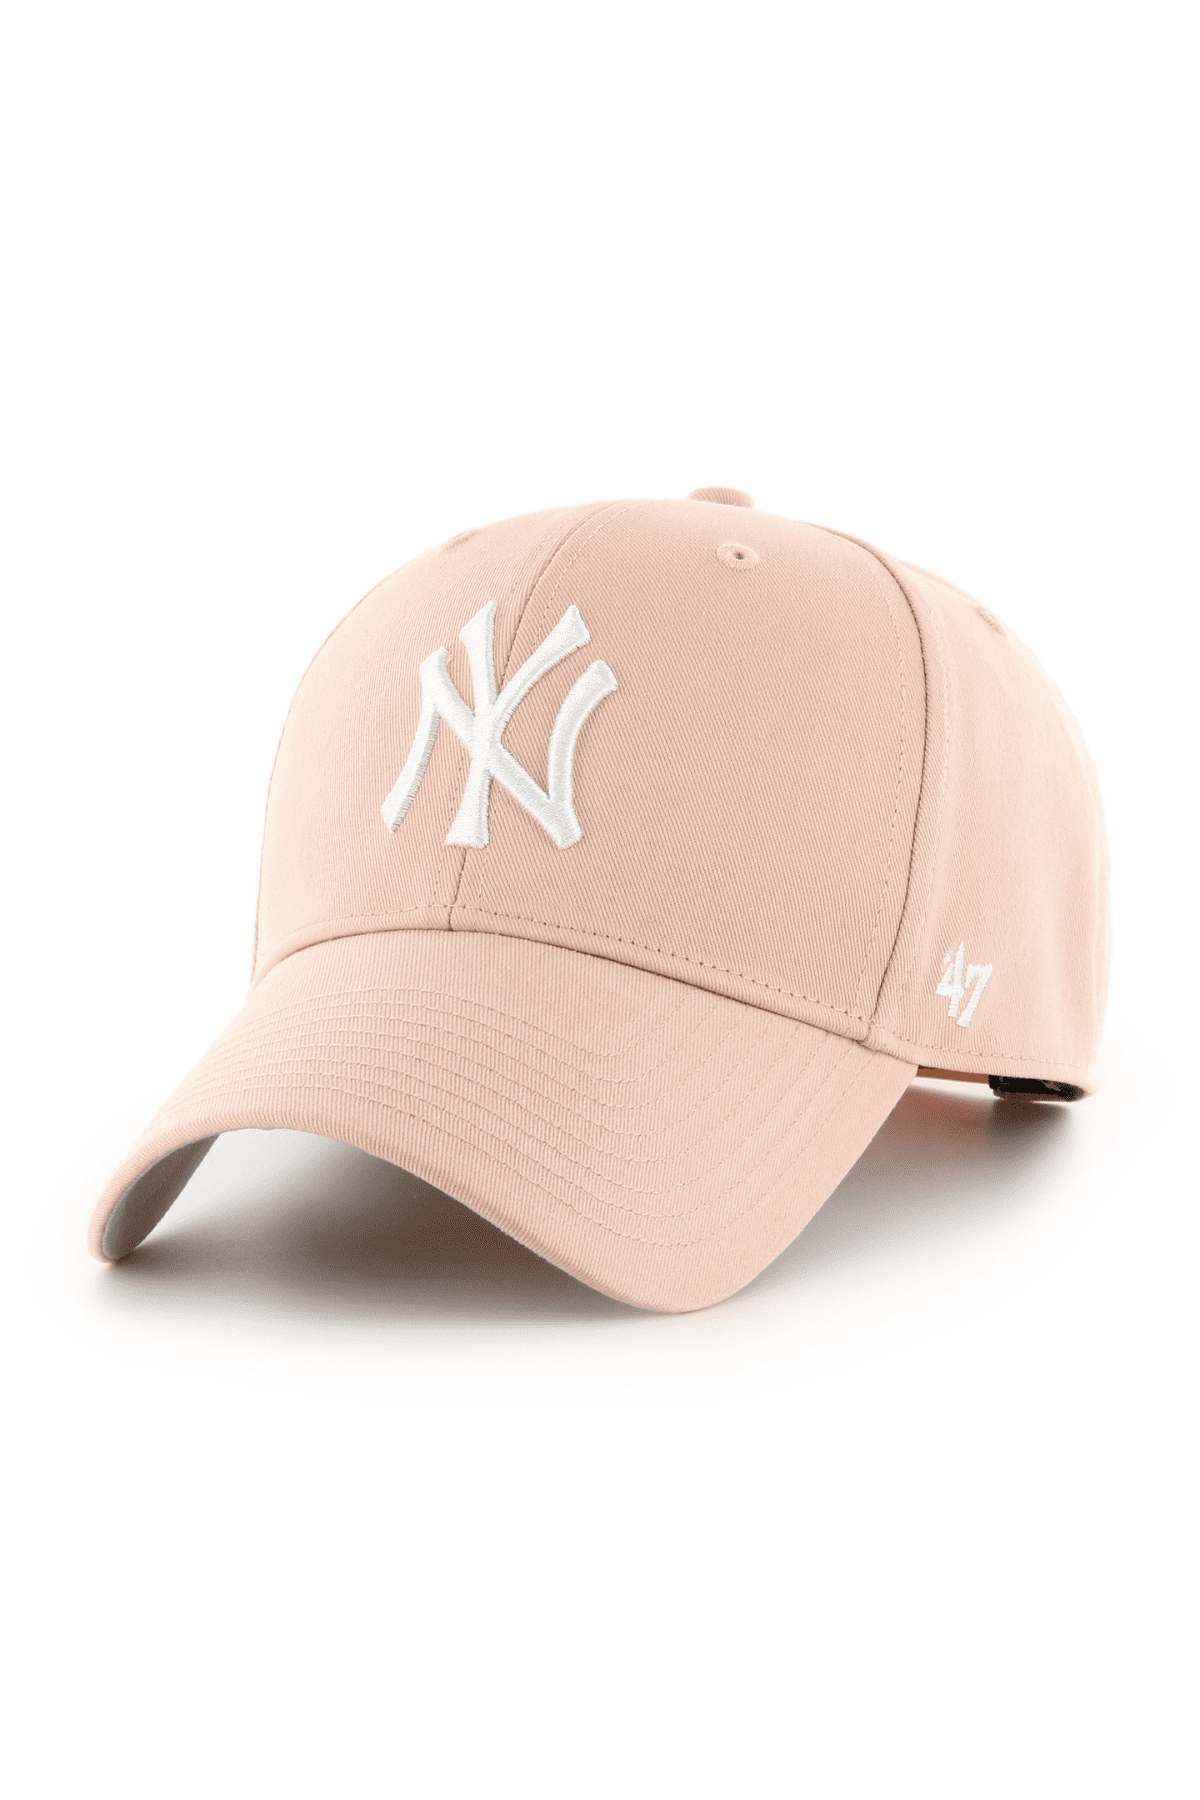 כובע מצחייה - 47 MVP NY עם הדפס New York Yankees ורוד-47-One size-נאקו